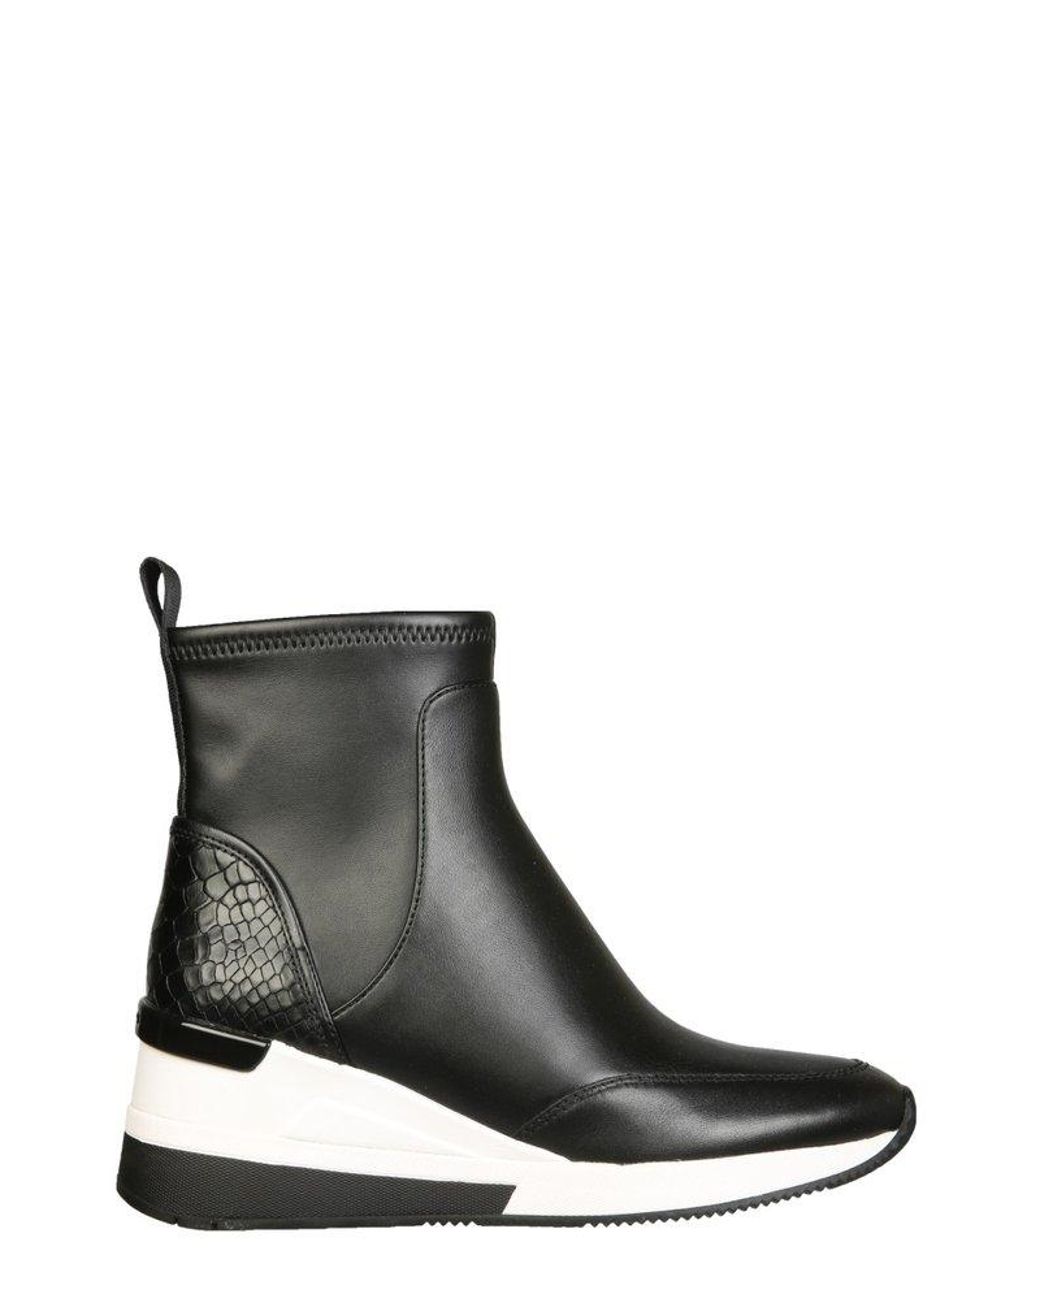 MICHAEL Michael Kors High-top Wedge Sneakers in Black | Lyst